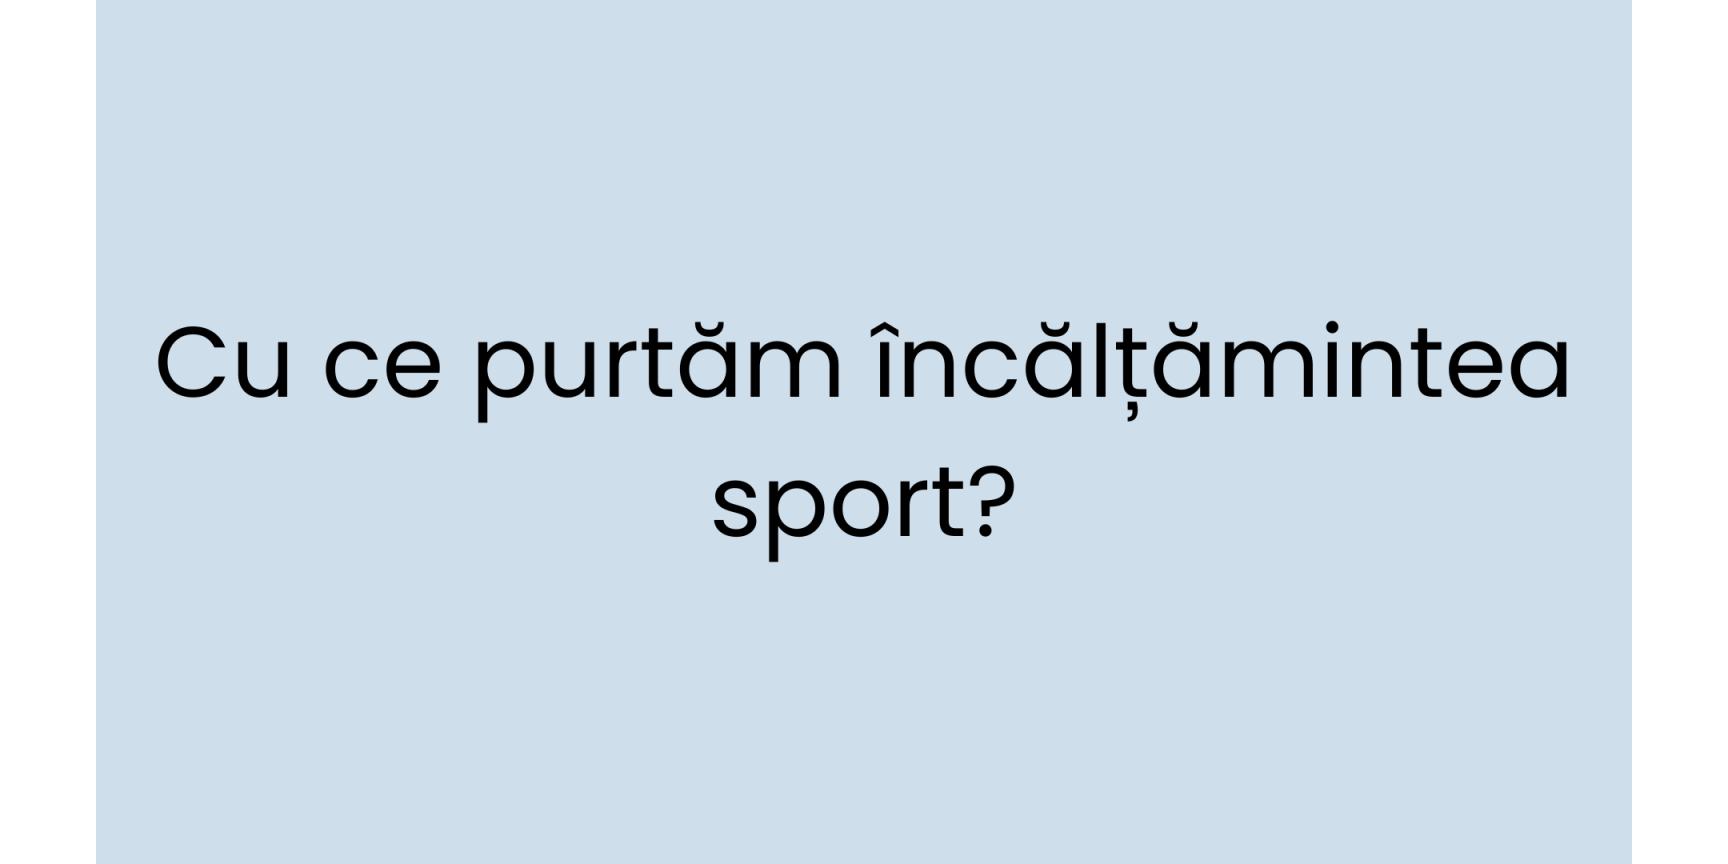 Cu ce purtam incaltamintea sport? 